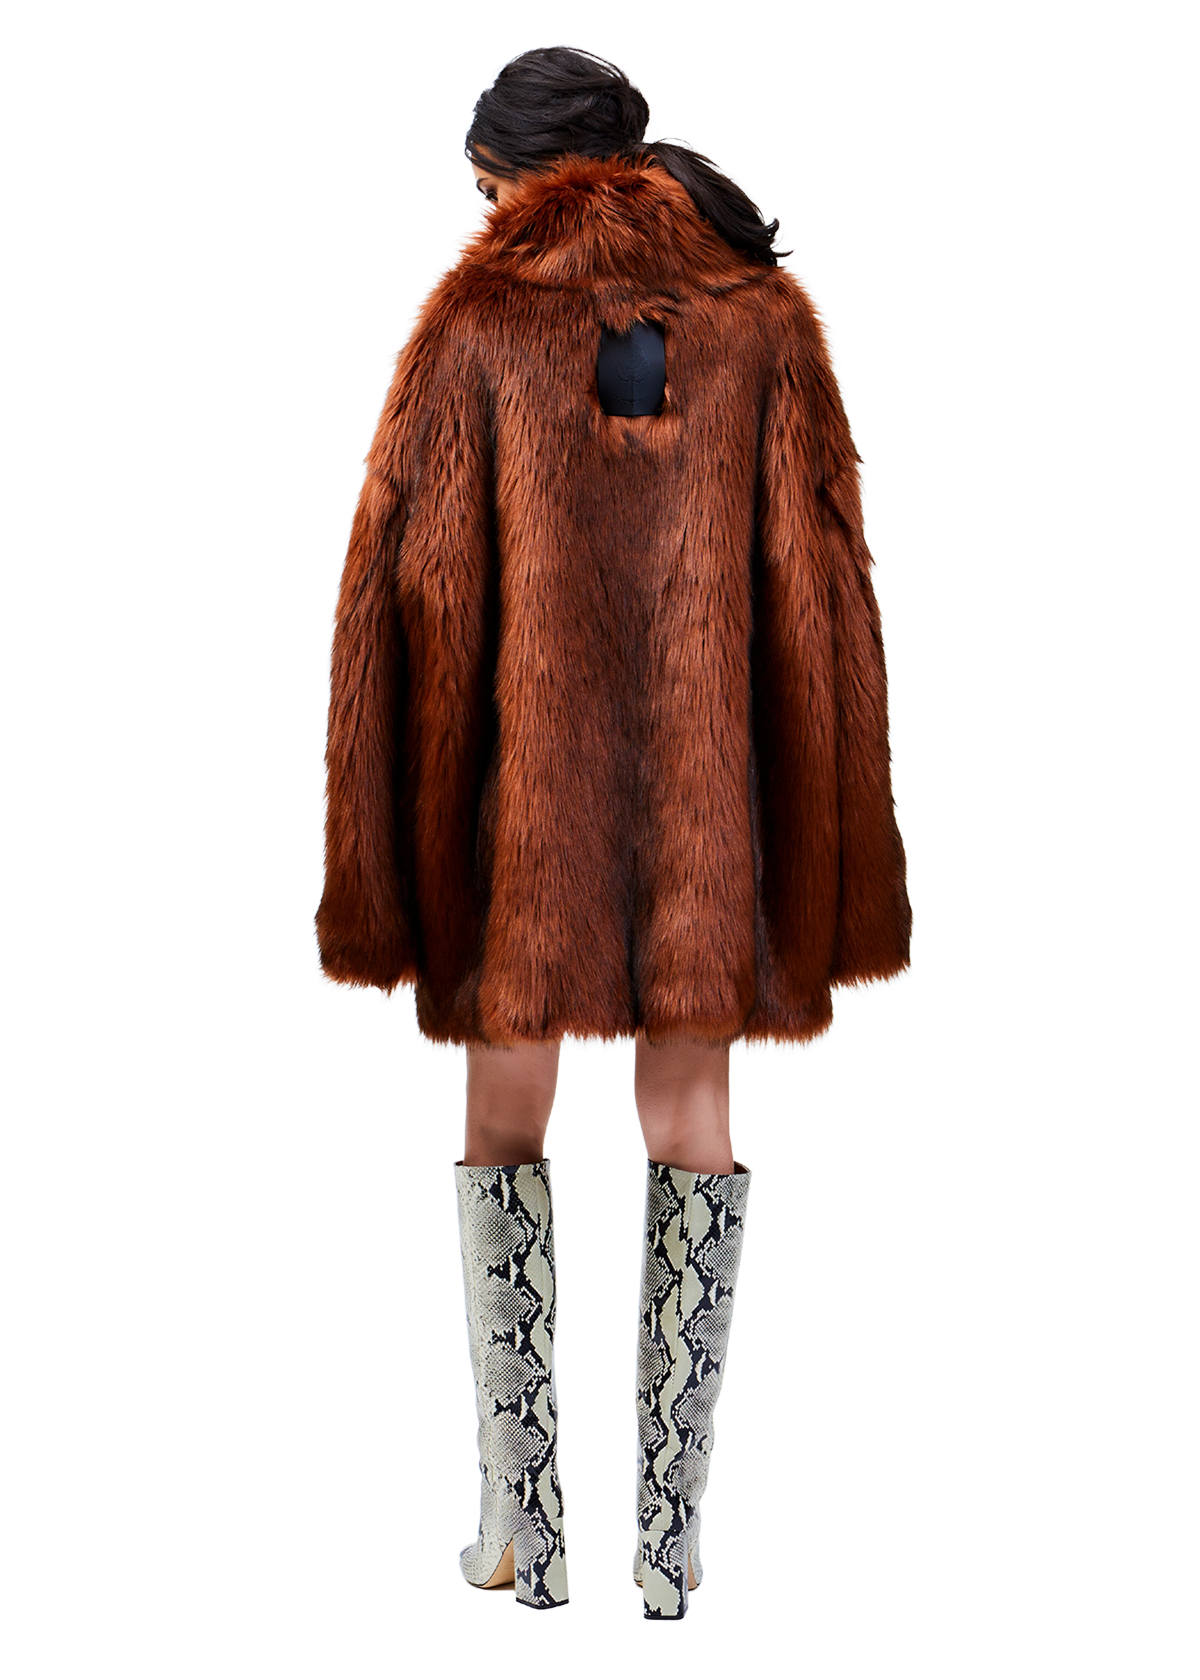 Model wears ARK/8 Faux Fur Rune Coat in a Size M/L - Back View